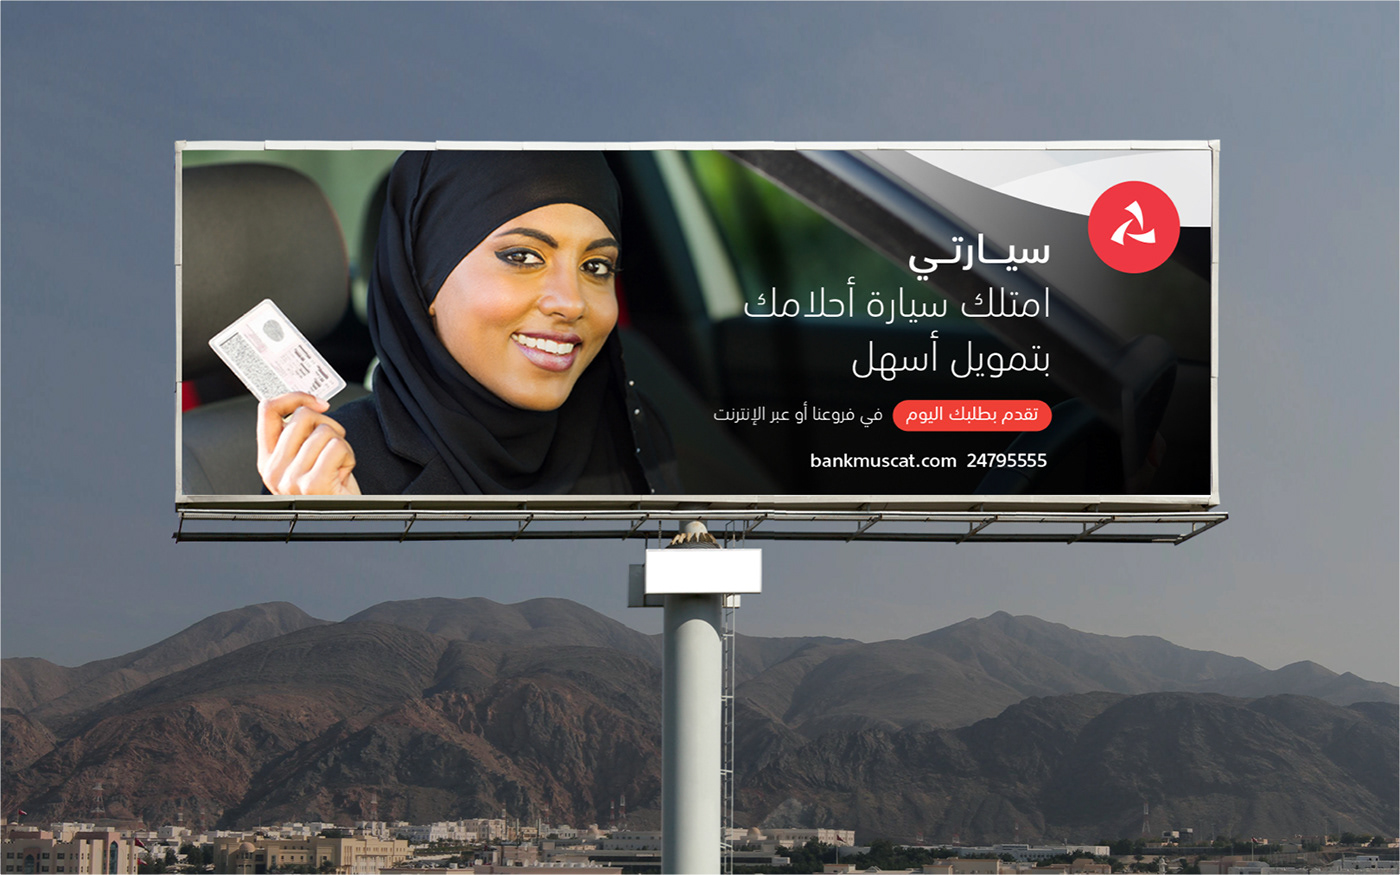 banking finance gcc Oman Bahrain rebranding Rebrand financial services